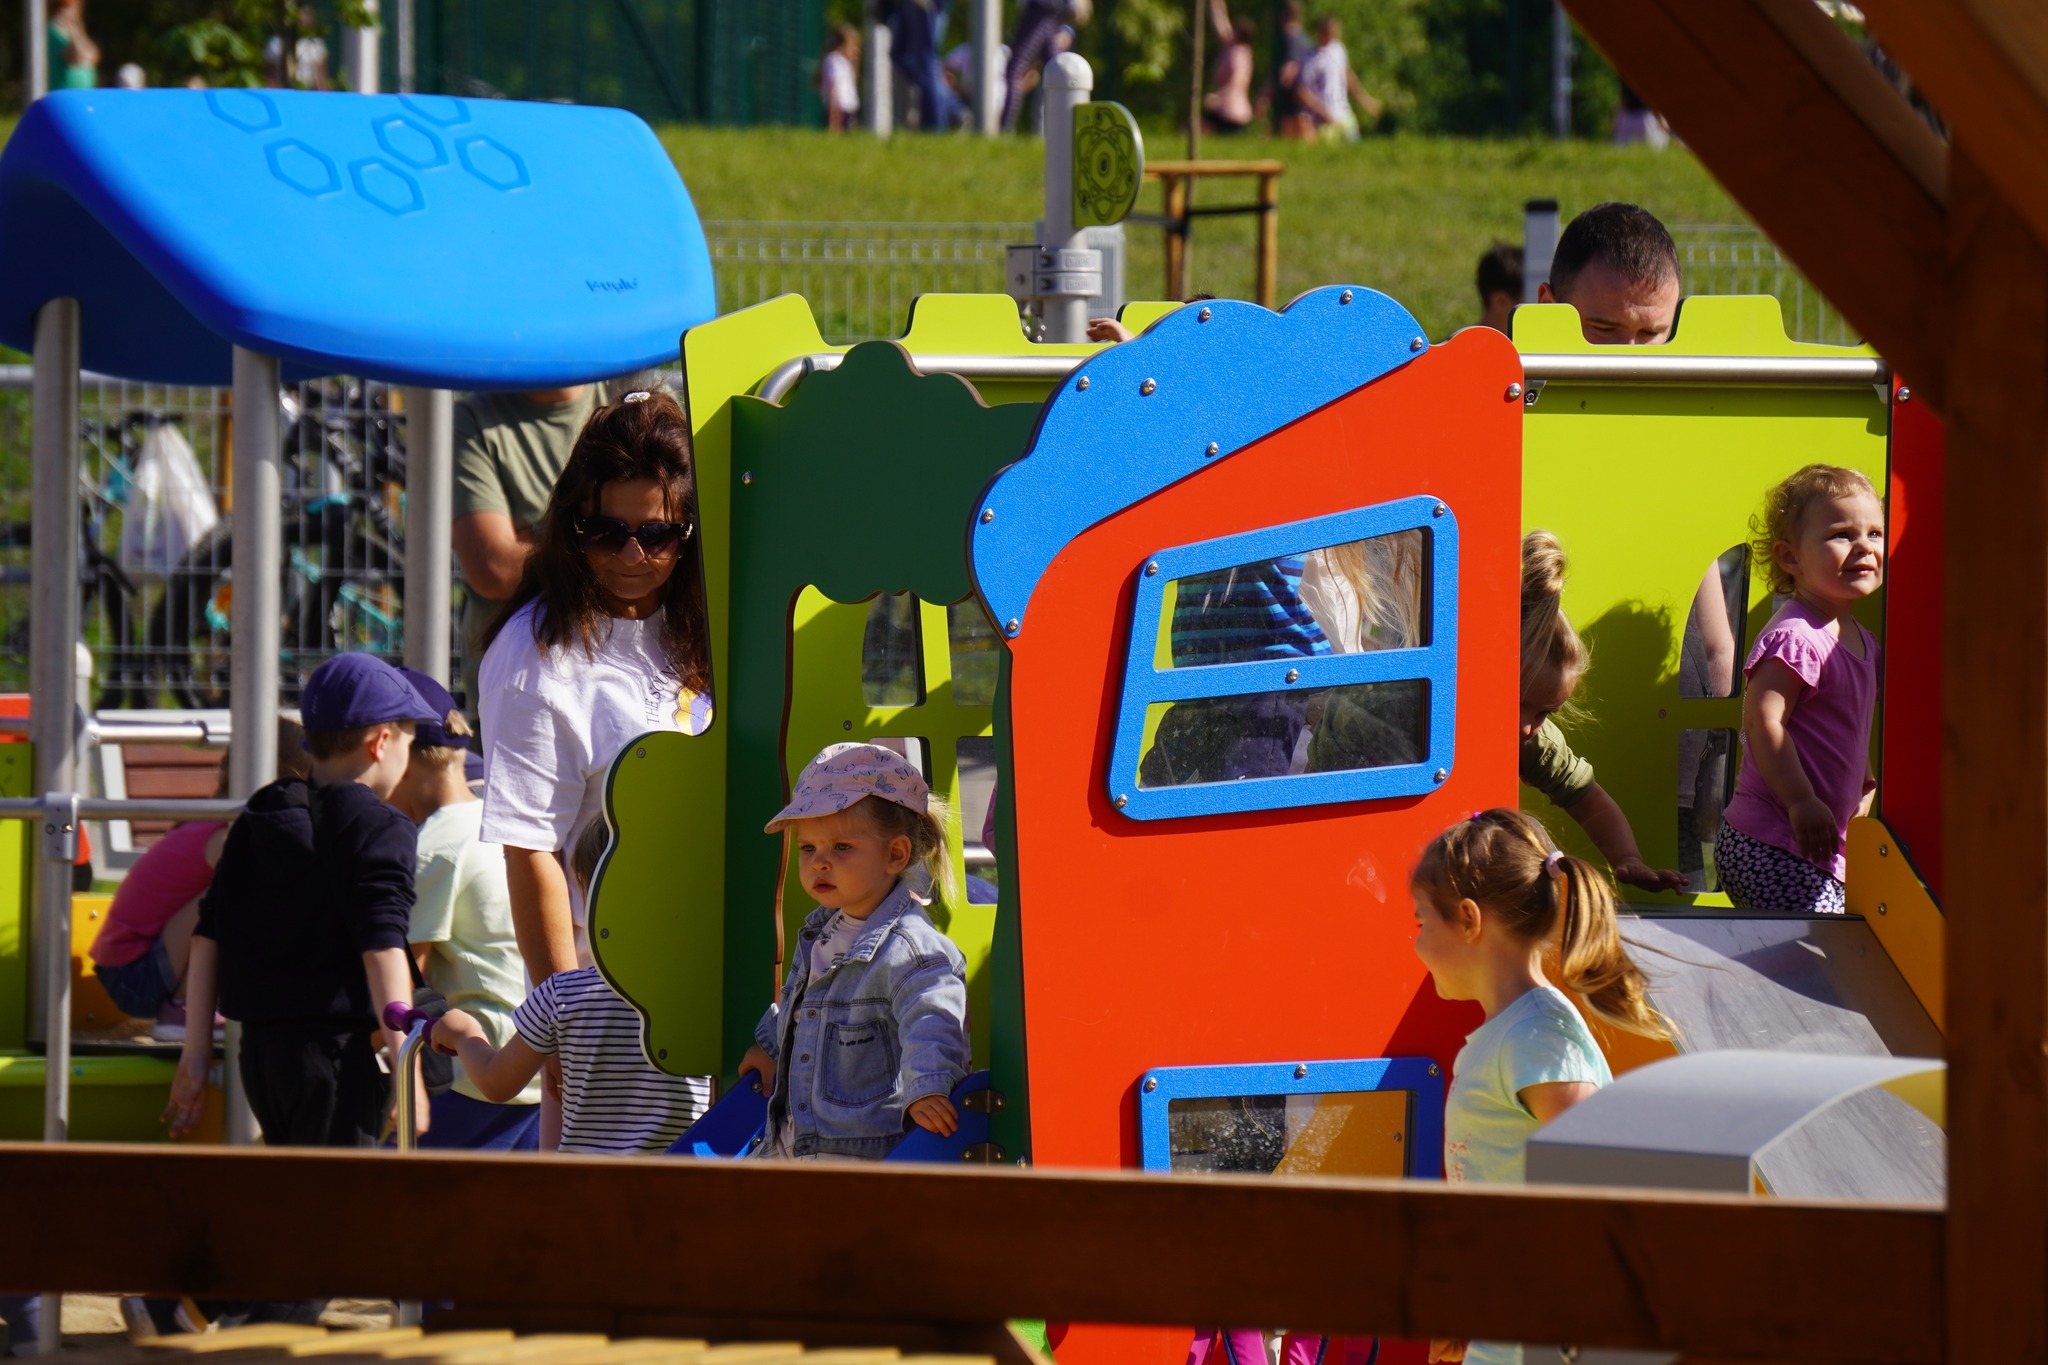 Plac zabaw dla dzieci młodszych, bawiące się dzieci, stojąca obok kobieta pilnująca dziewczynki.